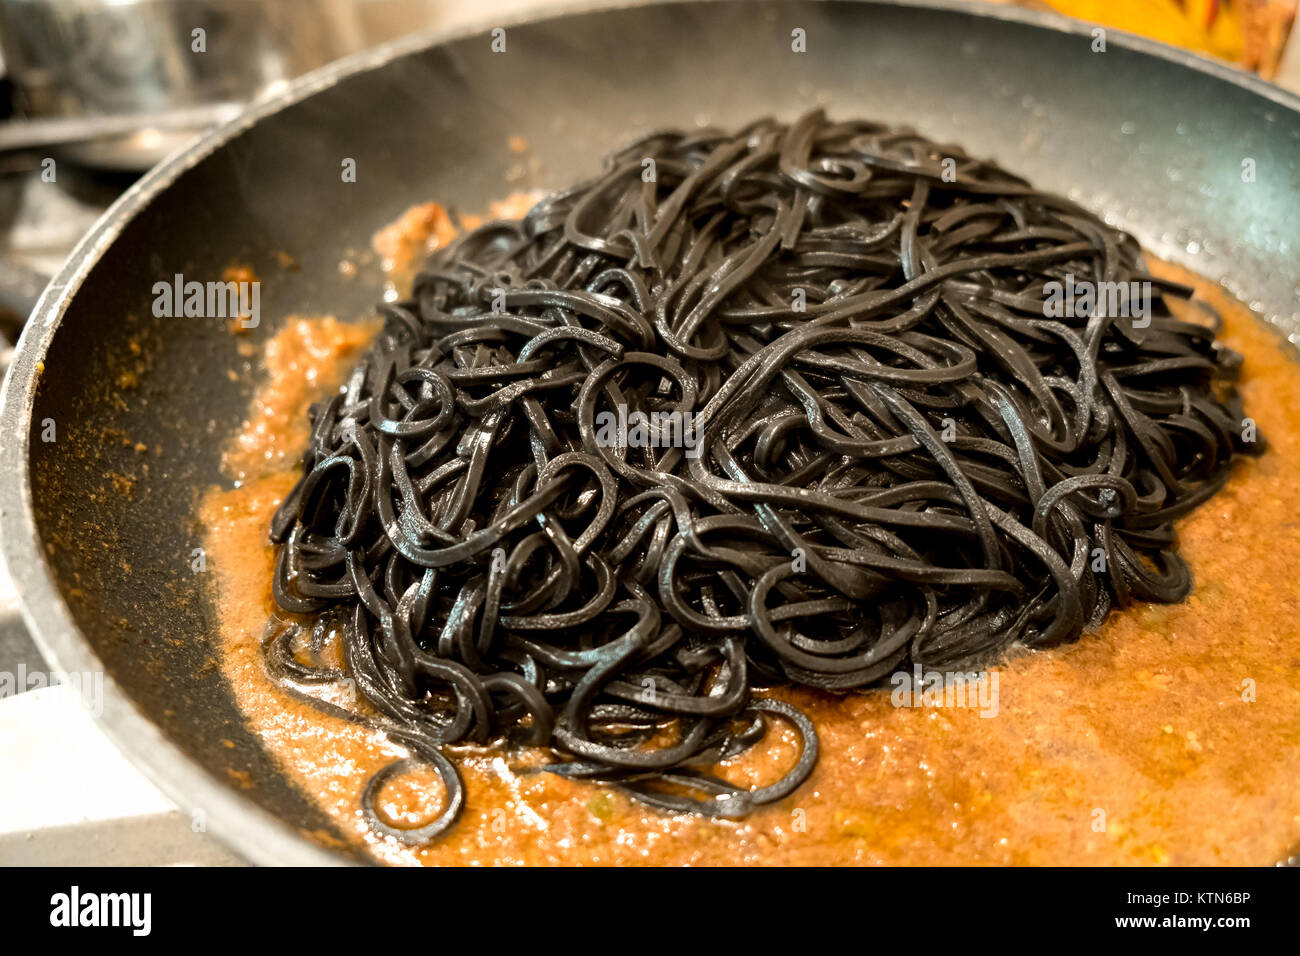 Schwarze pasta Tintenfisch in einer Pfanne - Italienische taglierini al Nero di seppia Stockfoto